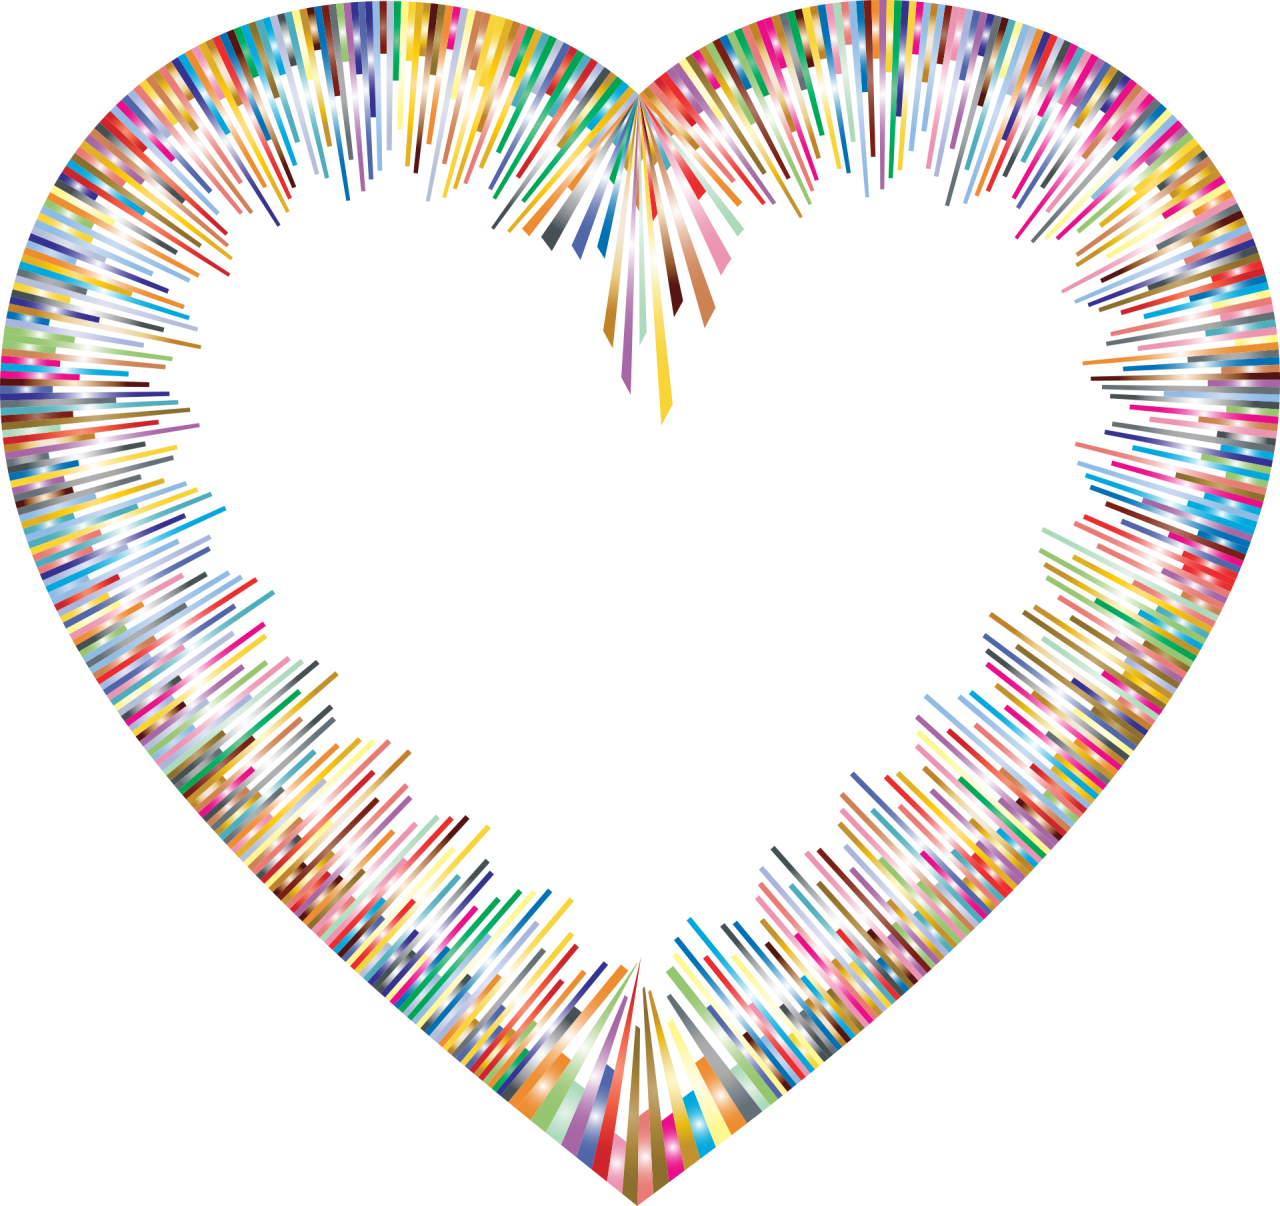 Color Spectrum Heart Shape PNG Image - PurePNG | Free transparent CC0